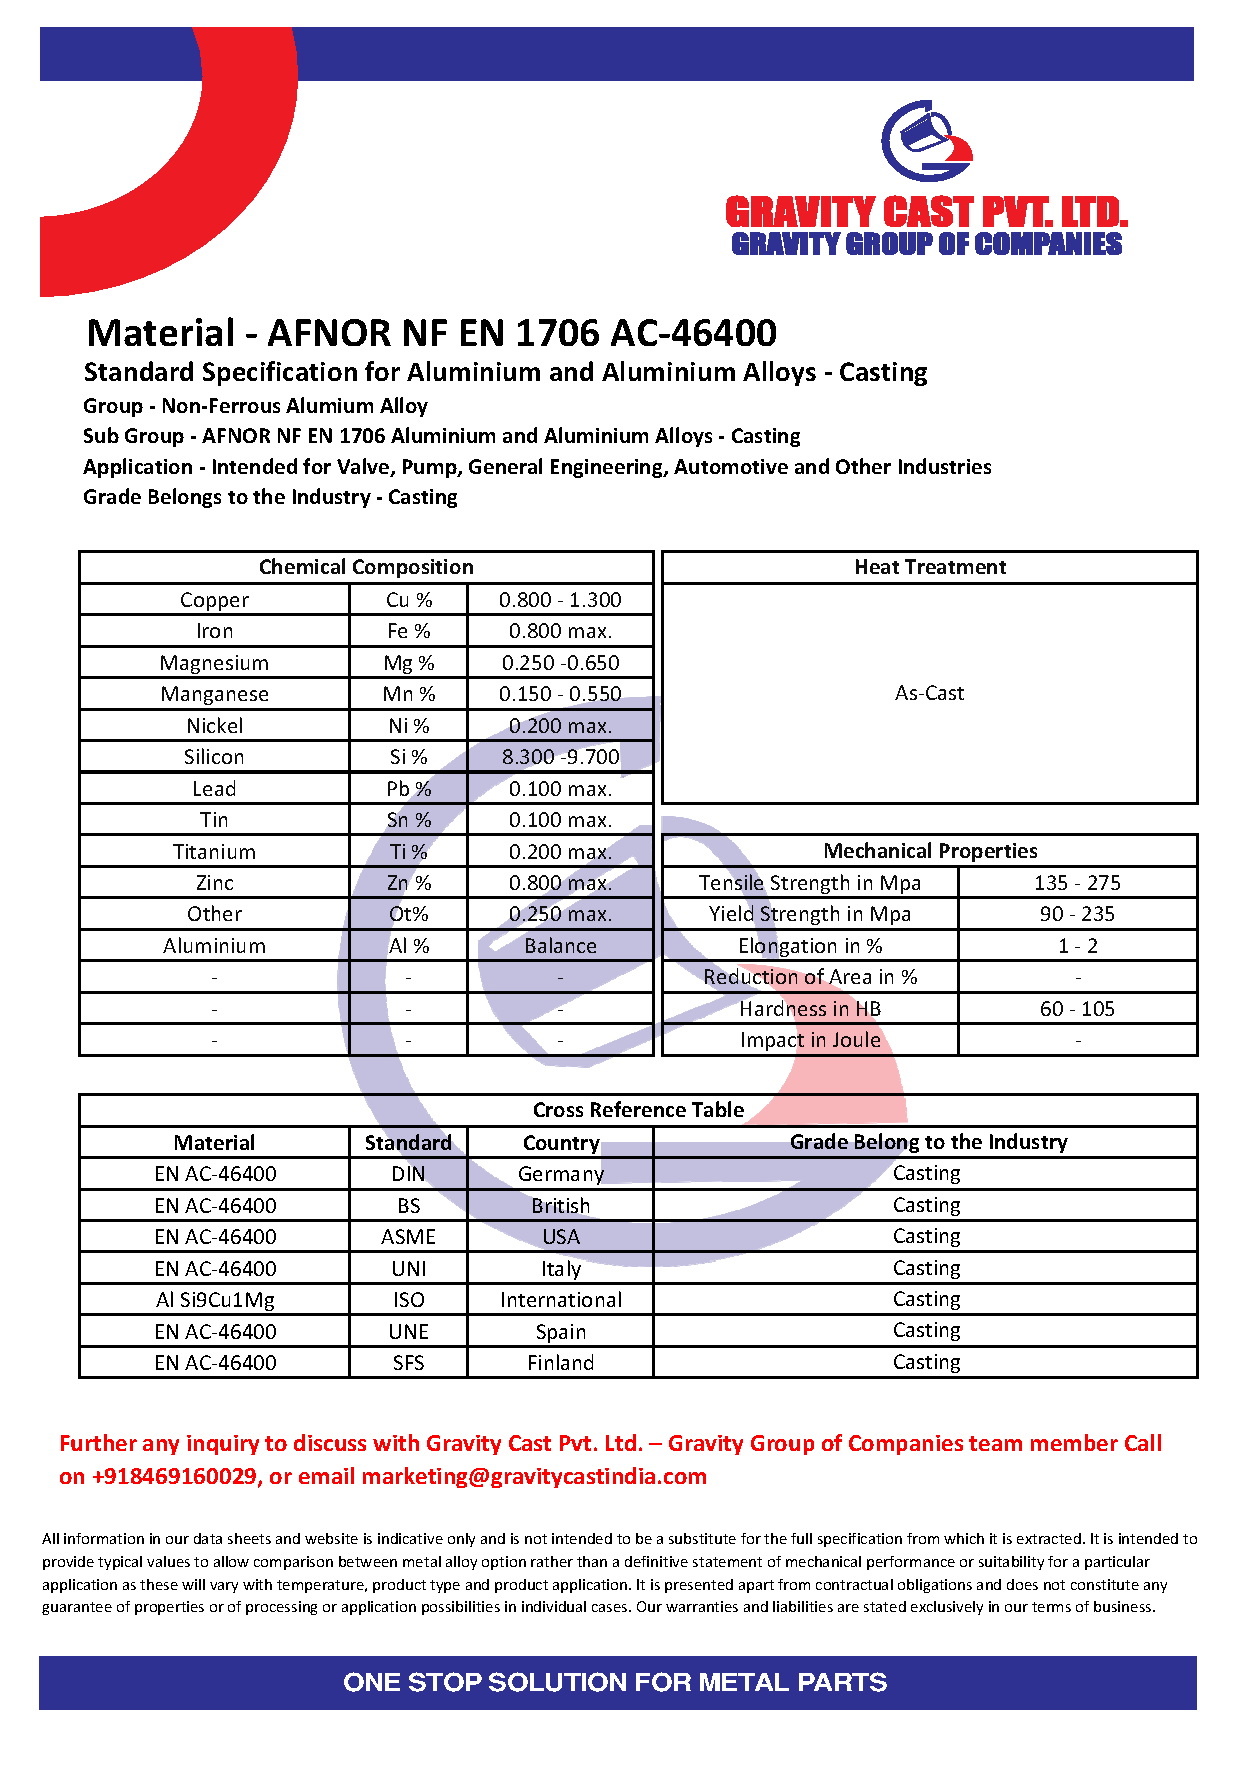 AFNOR NF EN 1706 AC-46400.pdf